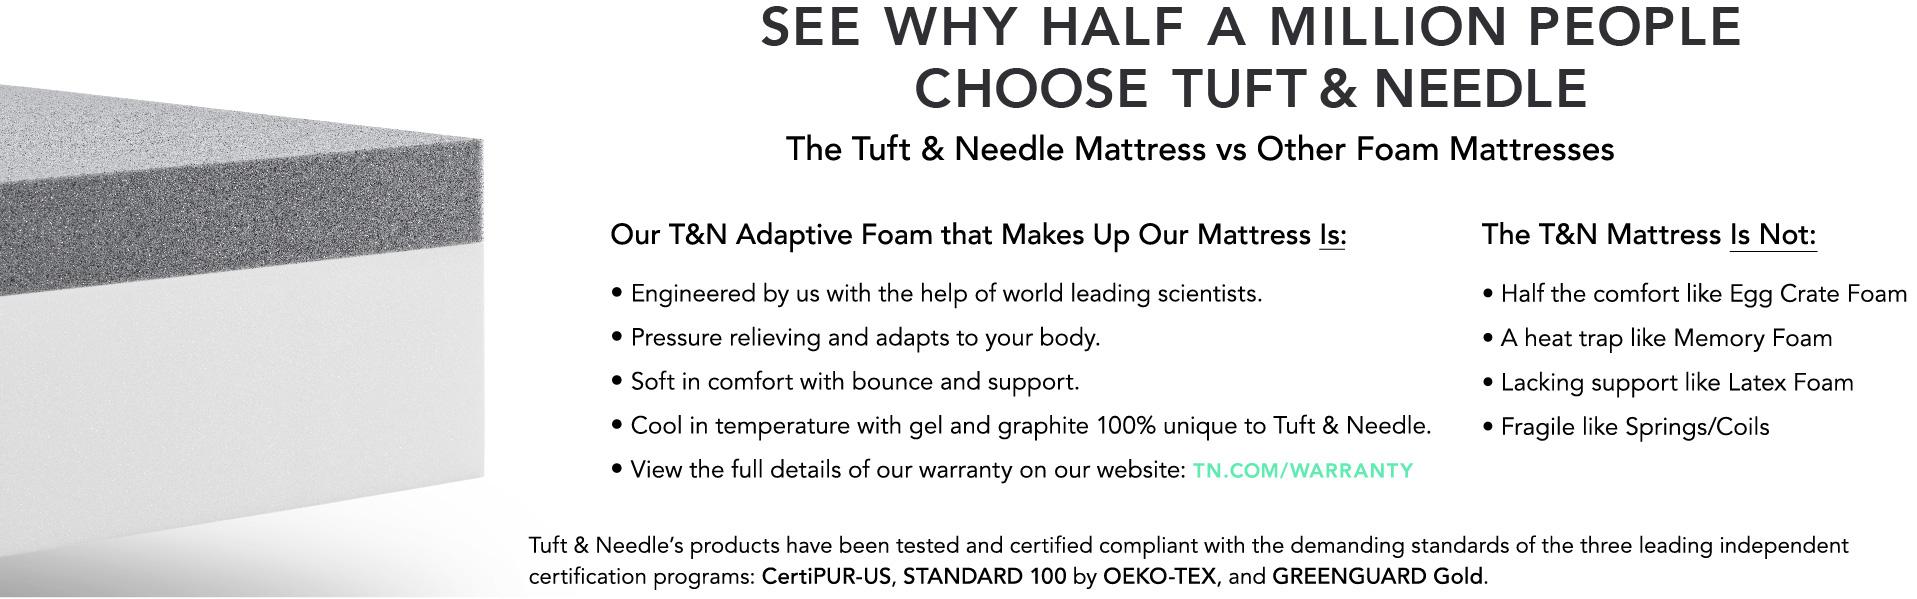 Tuft Needle Mattress